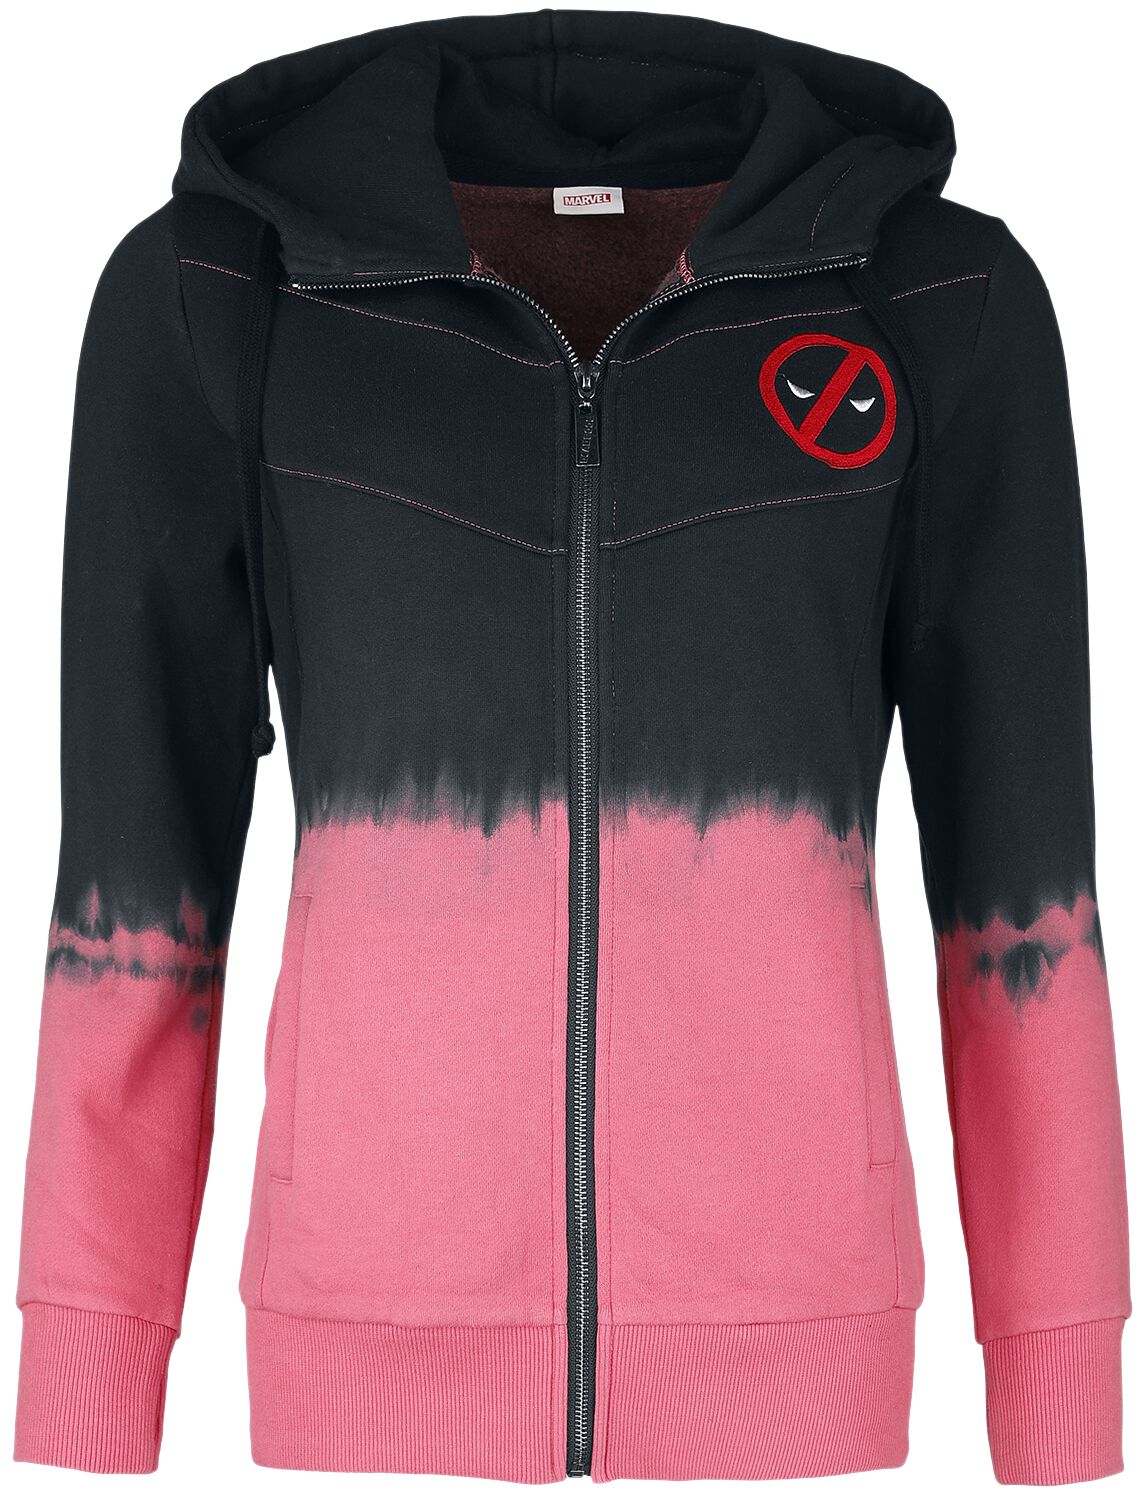 Sweat-shirt zippé à capuche de Deadpool - Licorne - S à XL - pour Femme - multicolore